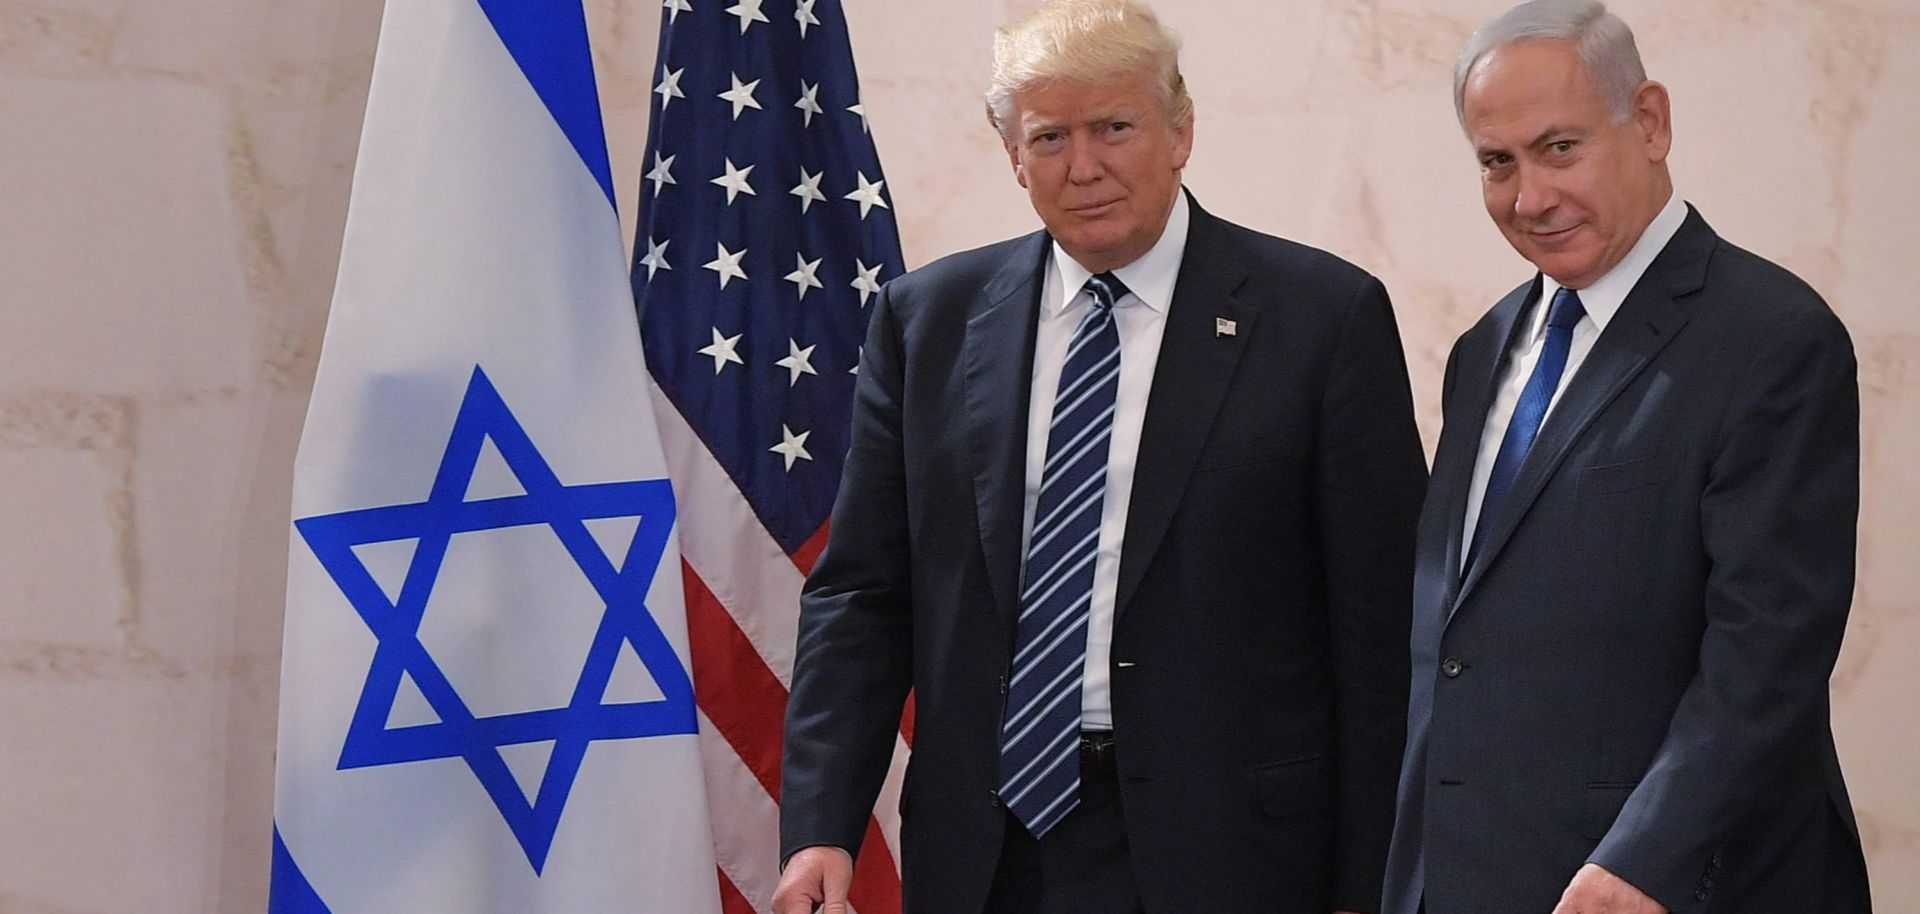 Israeli Prime Minister Benjamin Netanyahu (R) and U.S. President Donald Trump arrive at the Israel Museum in Jerusalem in May 2017.